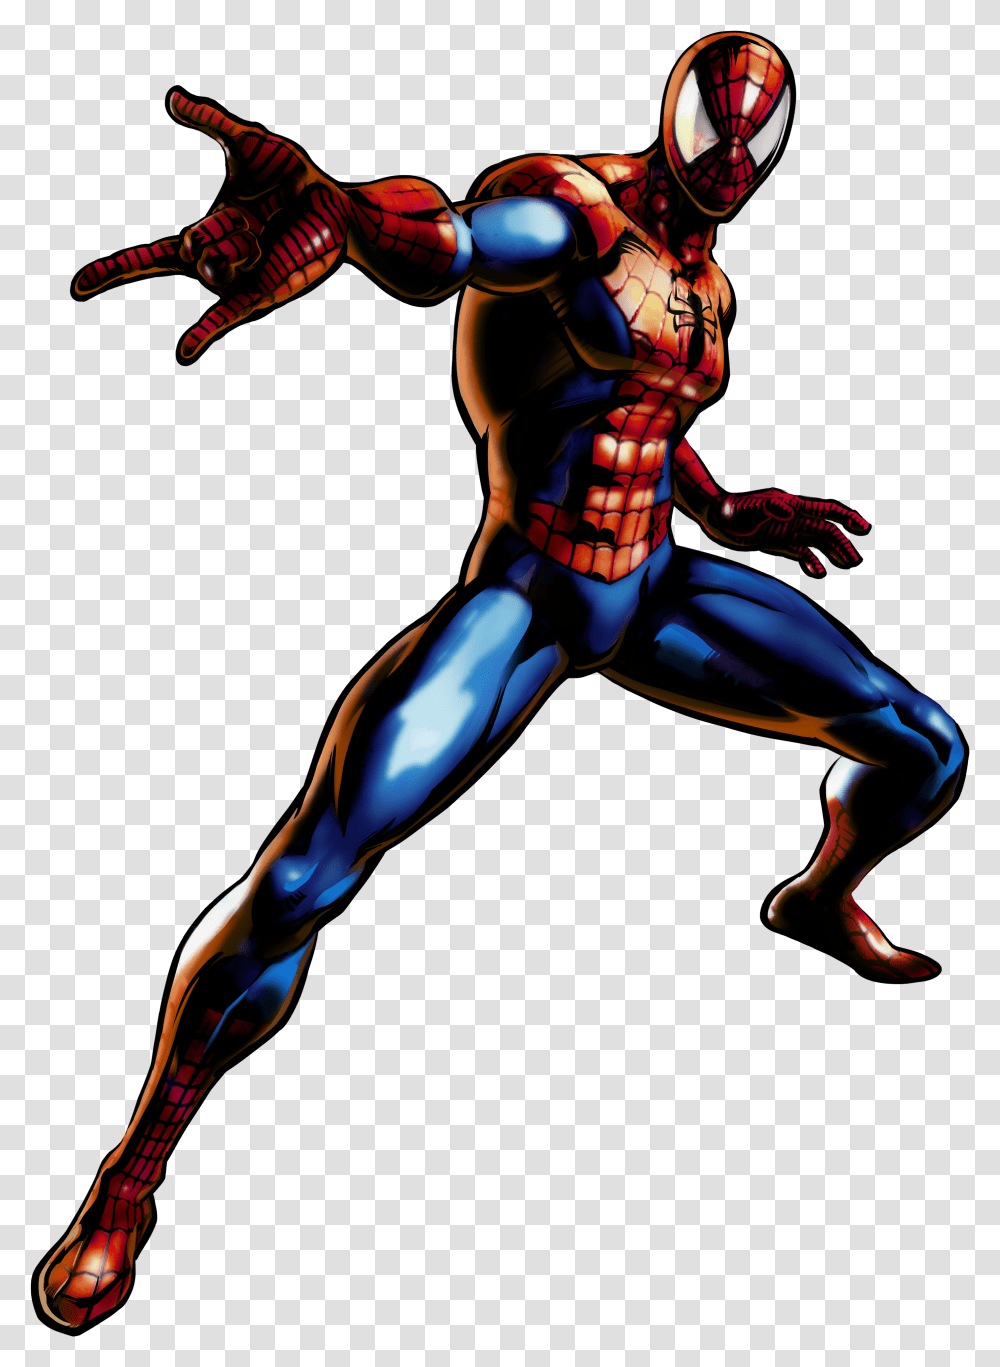 Ultimate Marvel Vs Capcom Marvel Vs Capcom 3 Spiderman, Person, People, Book, Comics Transparent Png